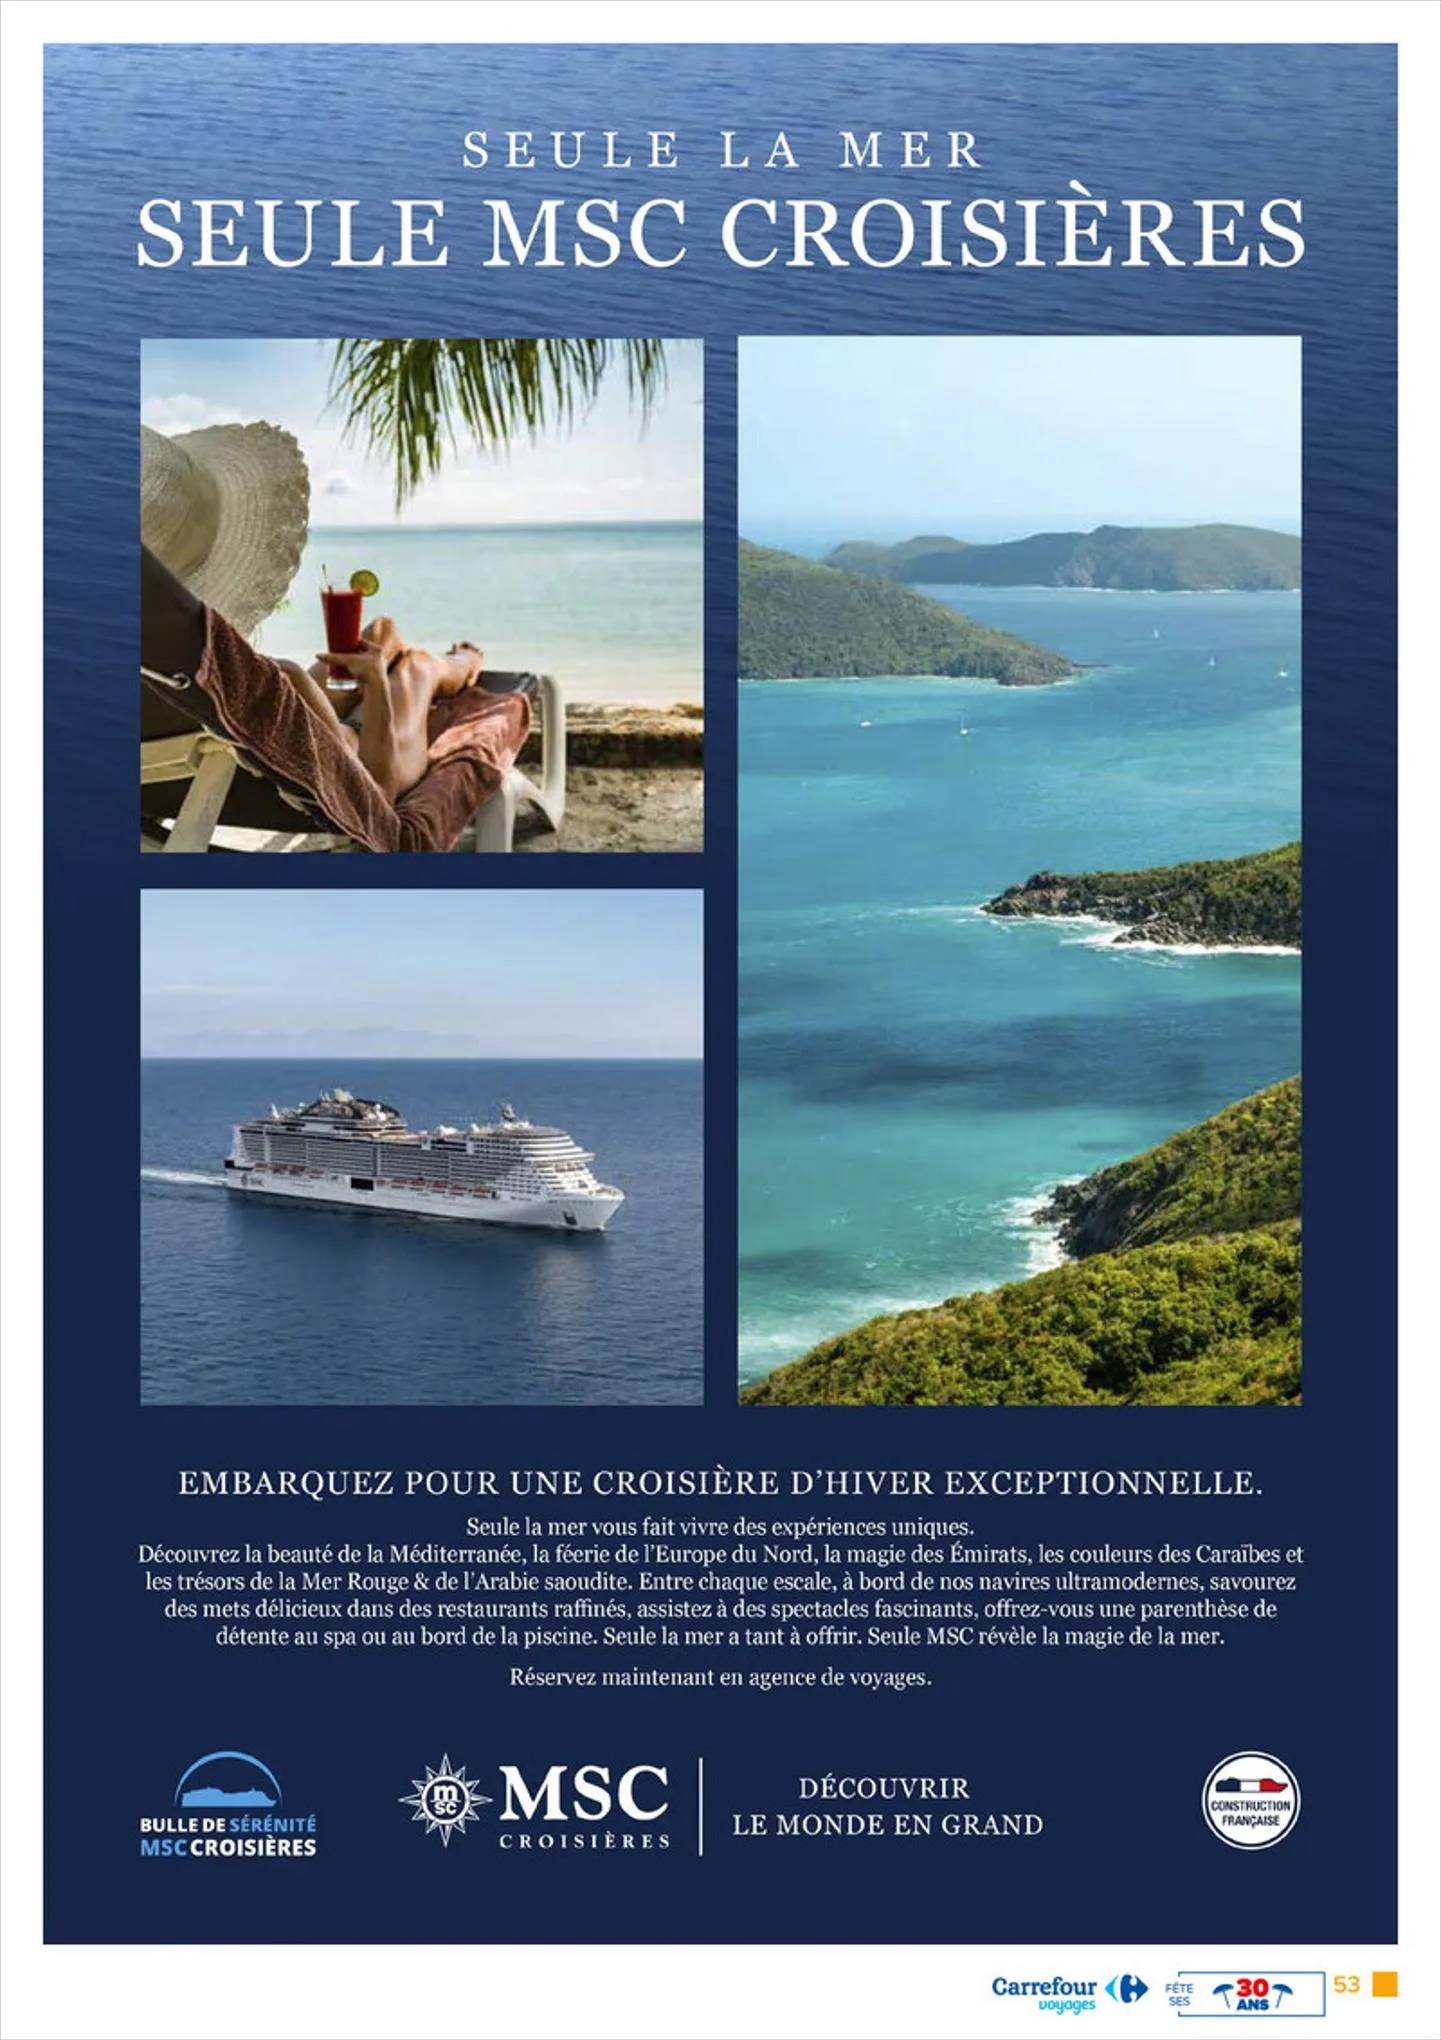 Catalogue Carrefour Voyages fête ses 30 ans, page 00055